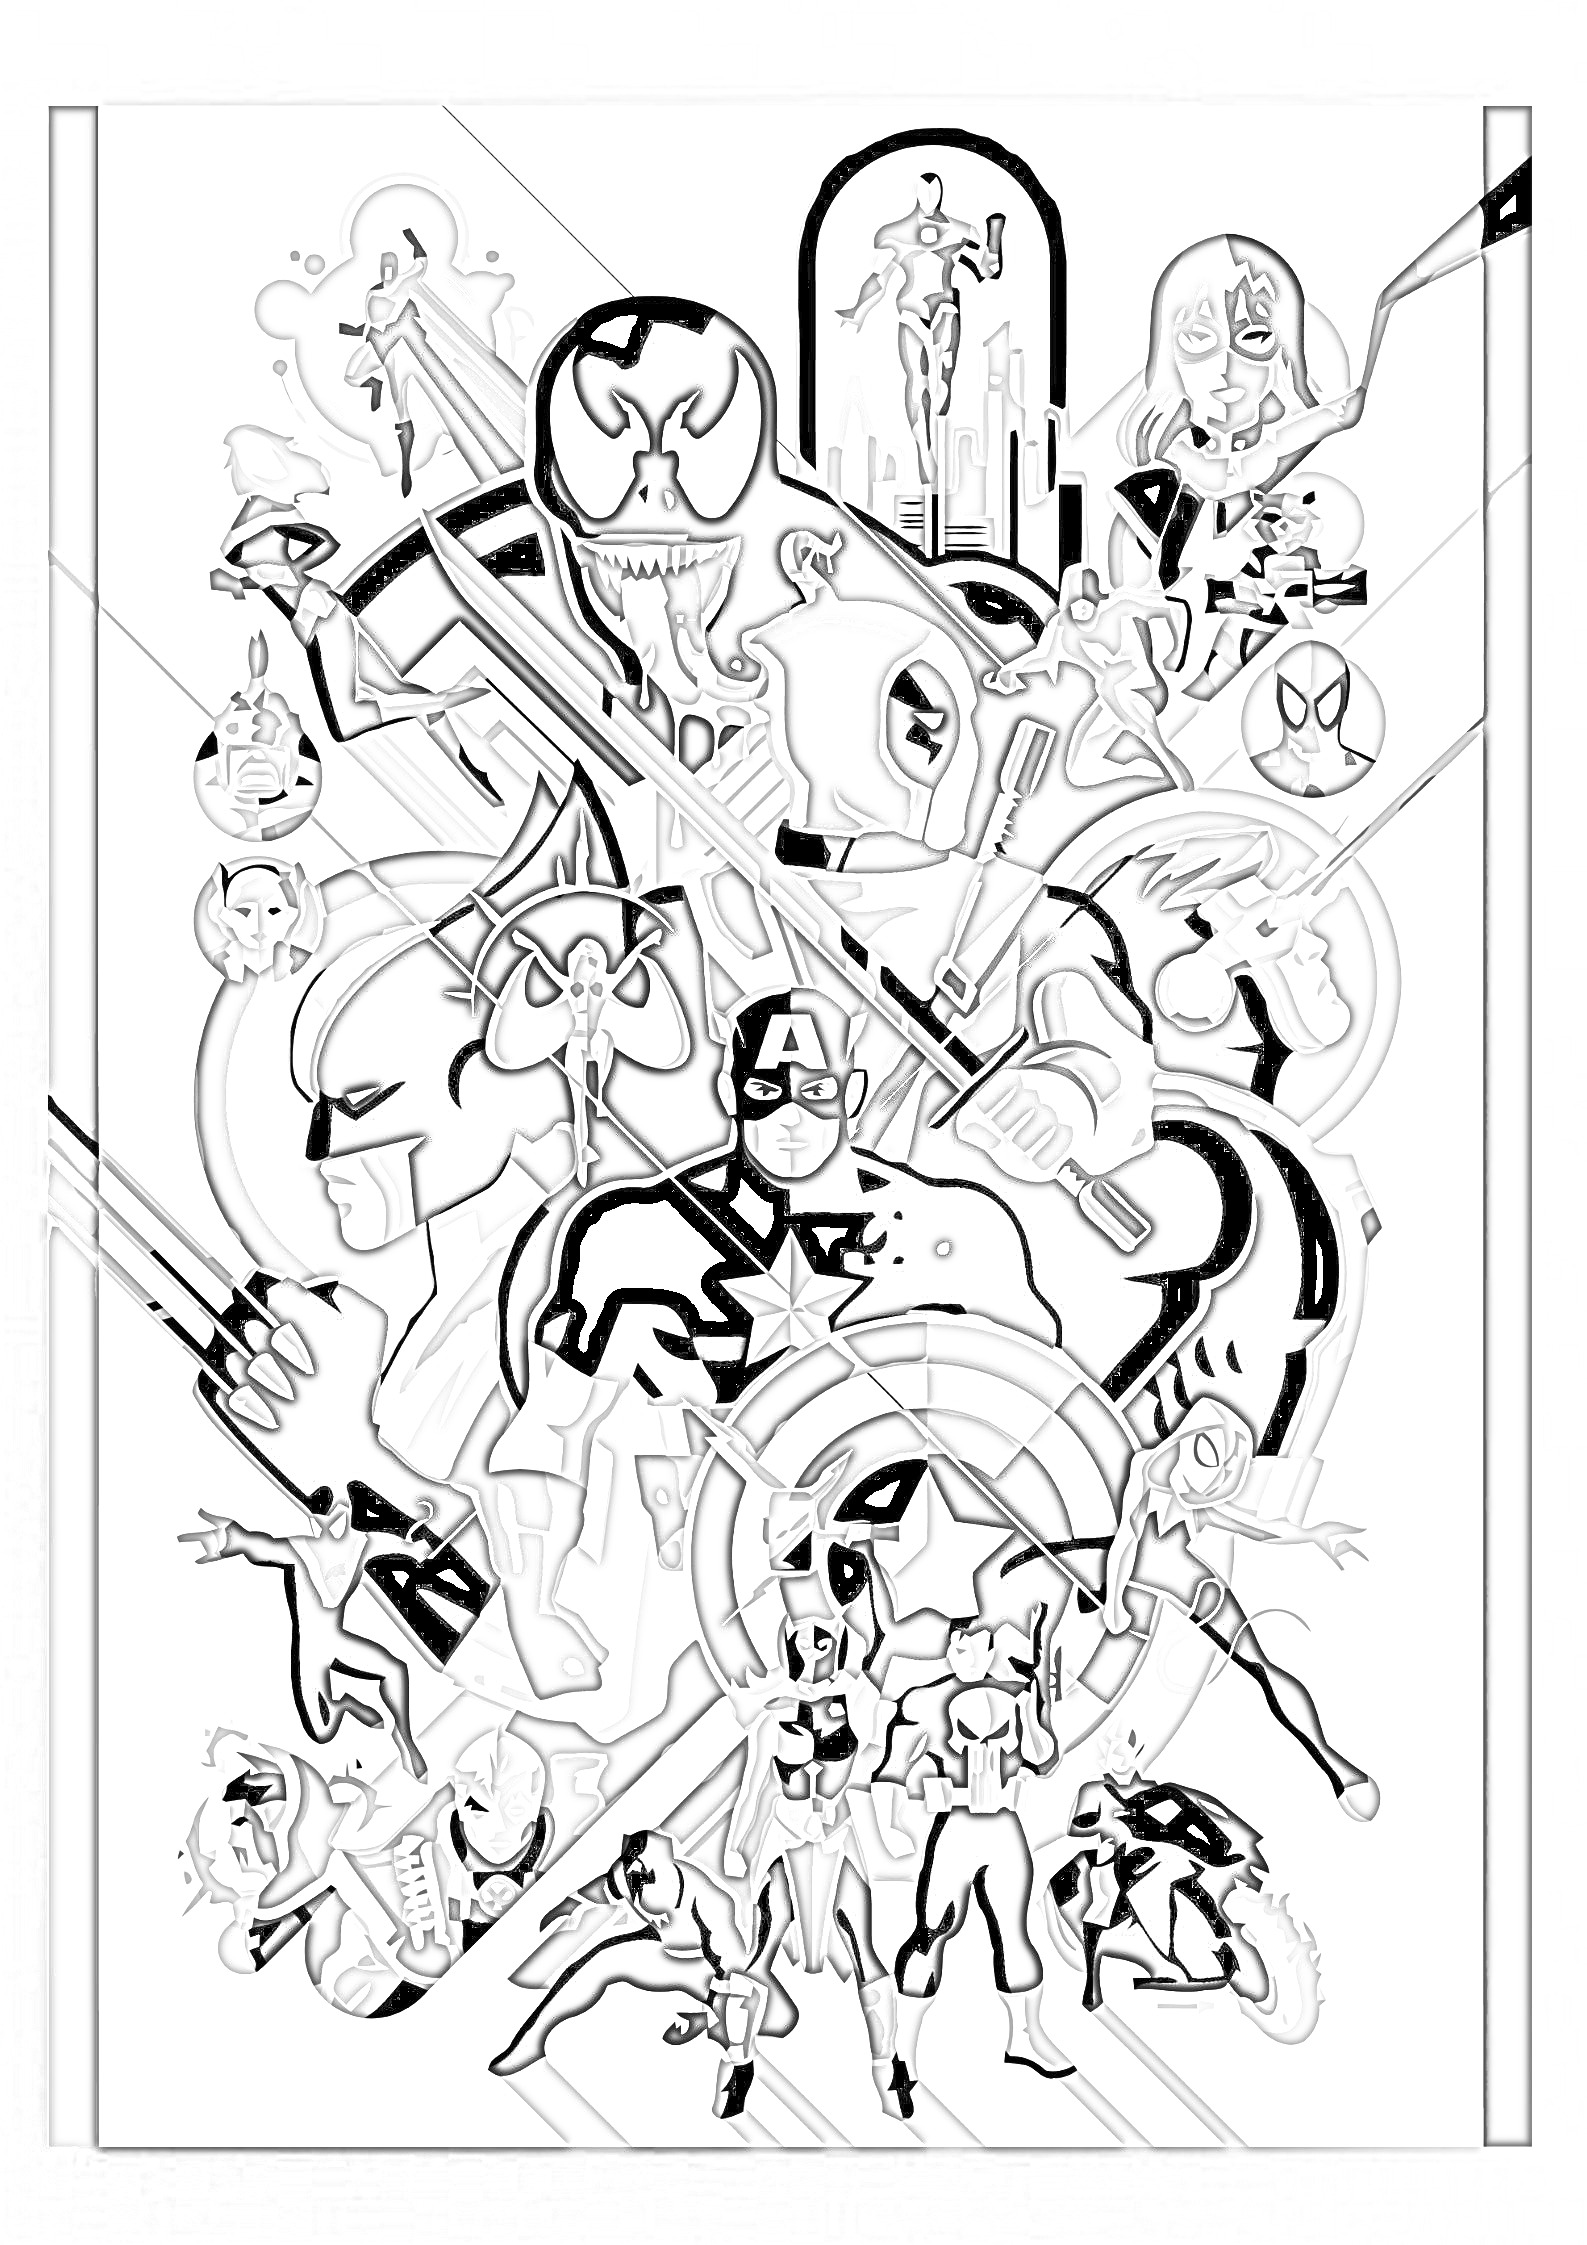 Раскраска Раскраска по номерам Marvel со множеством супергероев и злодеев, включая Капитана Америку, Человека-паука, Веноама, Дэдпула и другие.